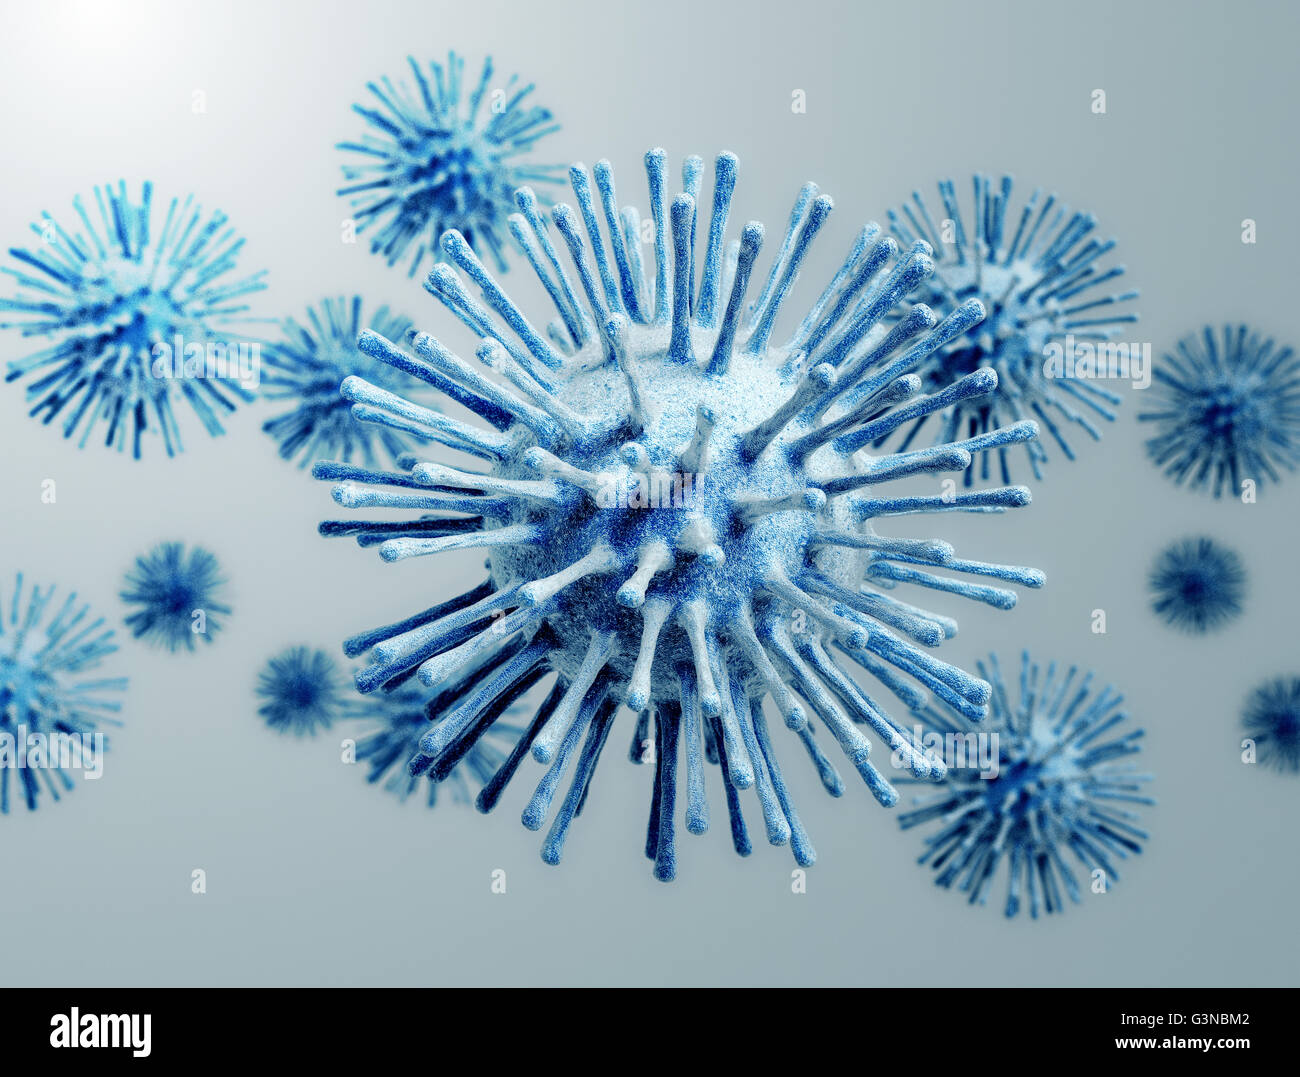 Illustration of Influenza Virus cells Stock Photo